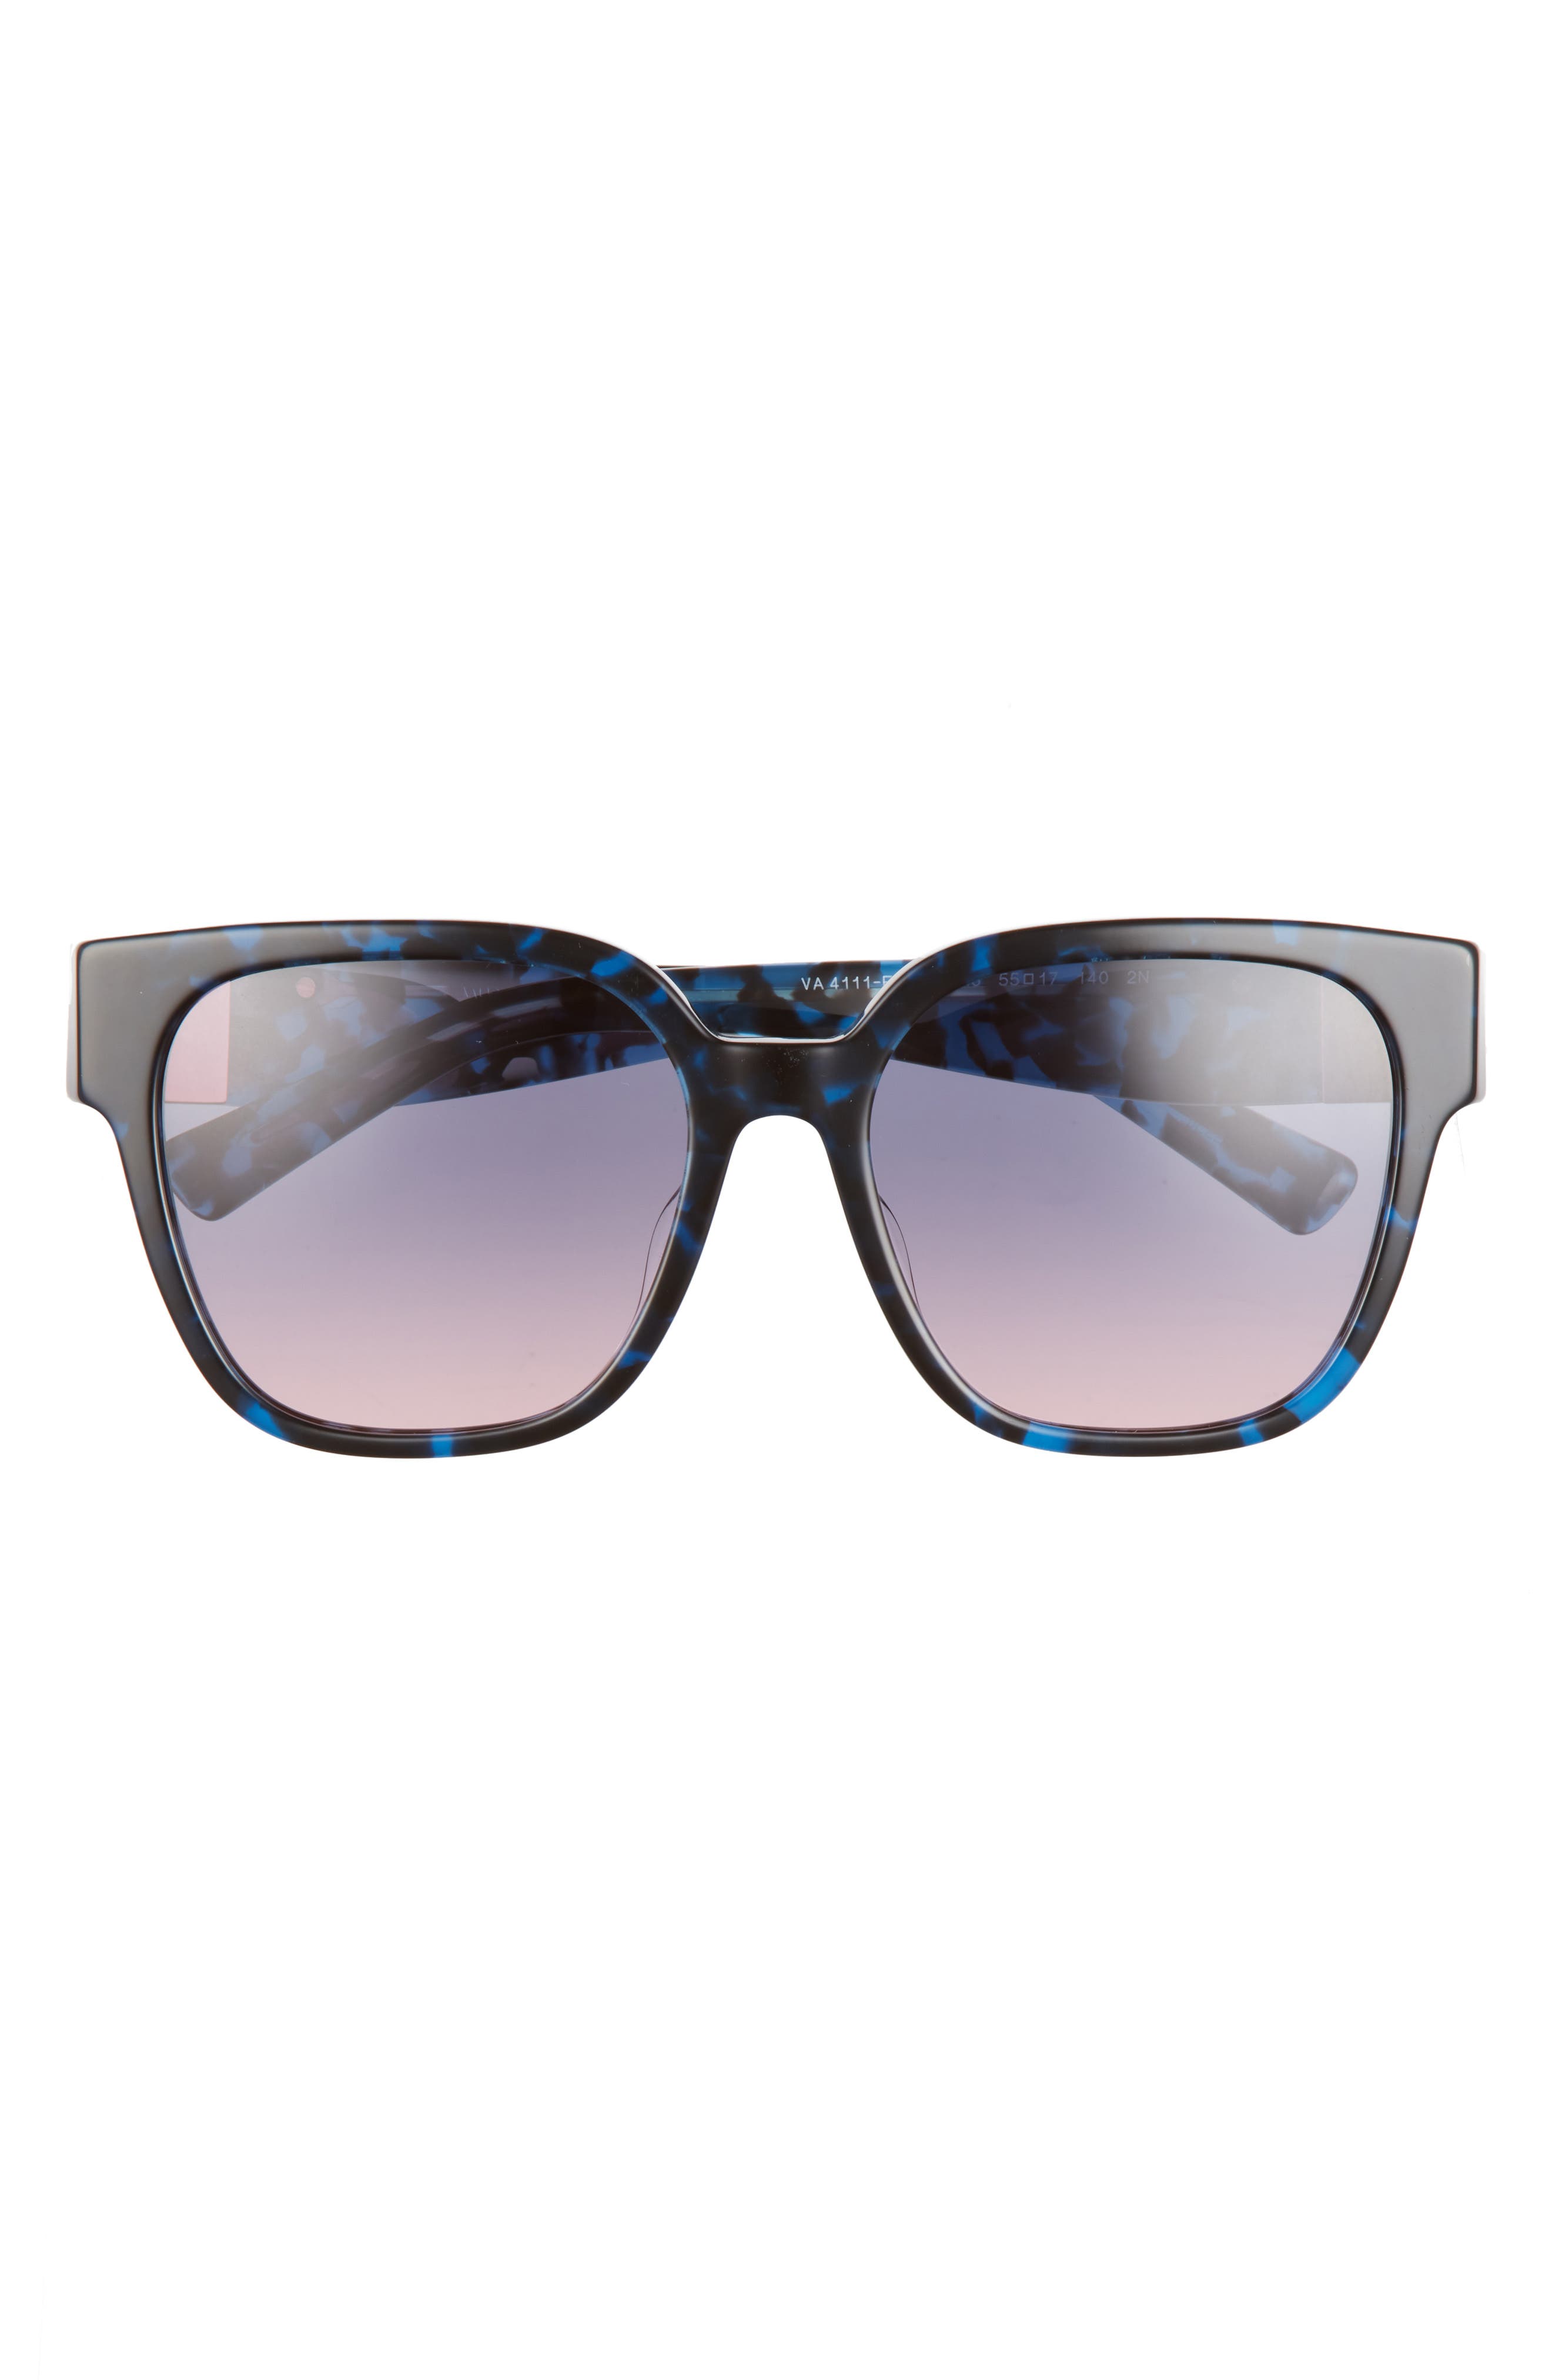 Valentino 55mm Gradient Square Sunglasses in Blue Havana/Gradient Rose